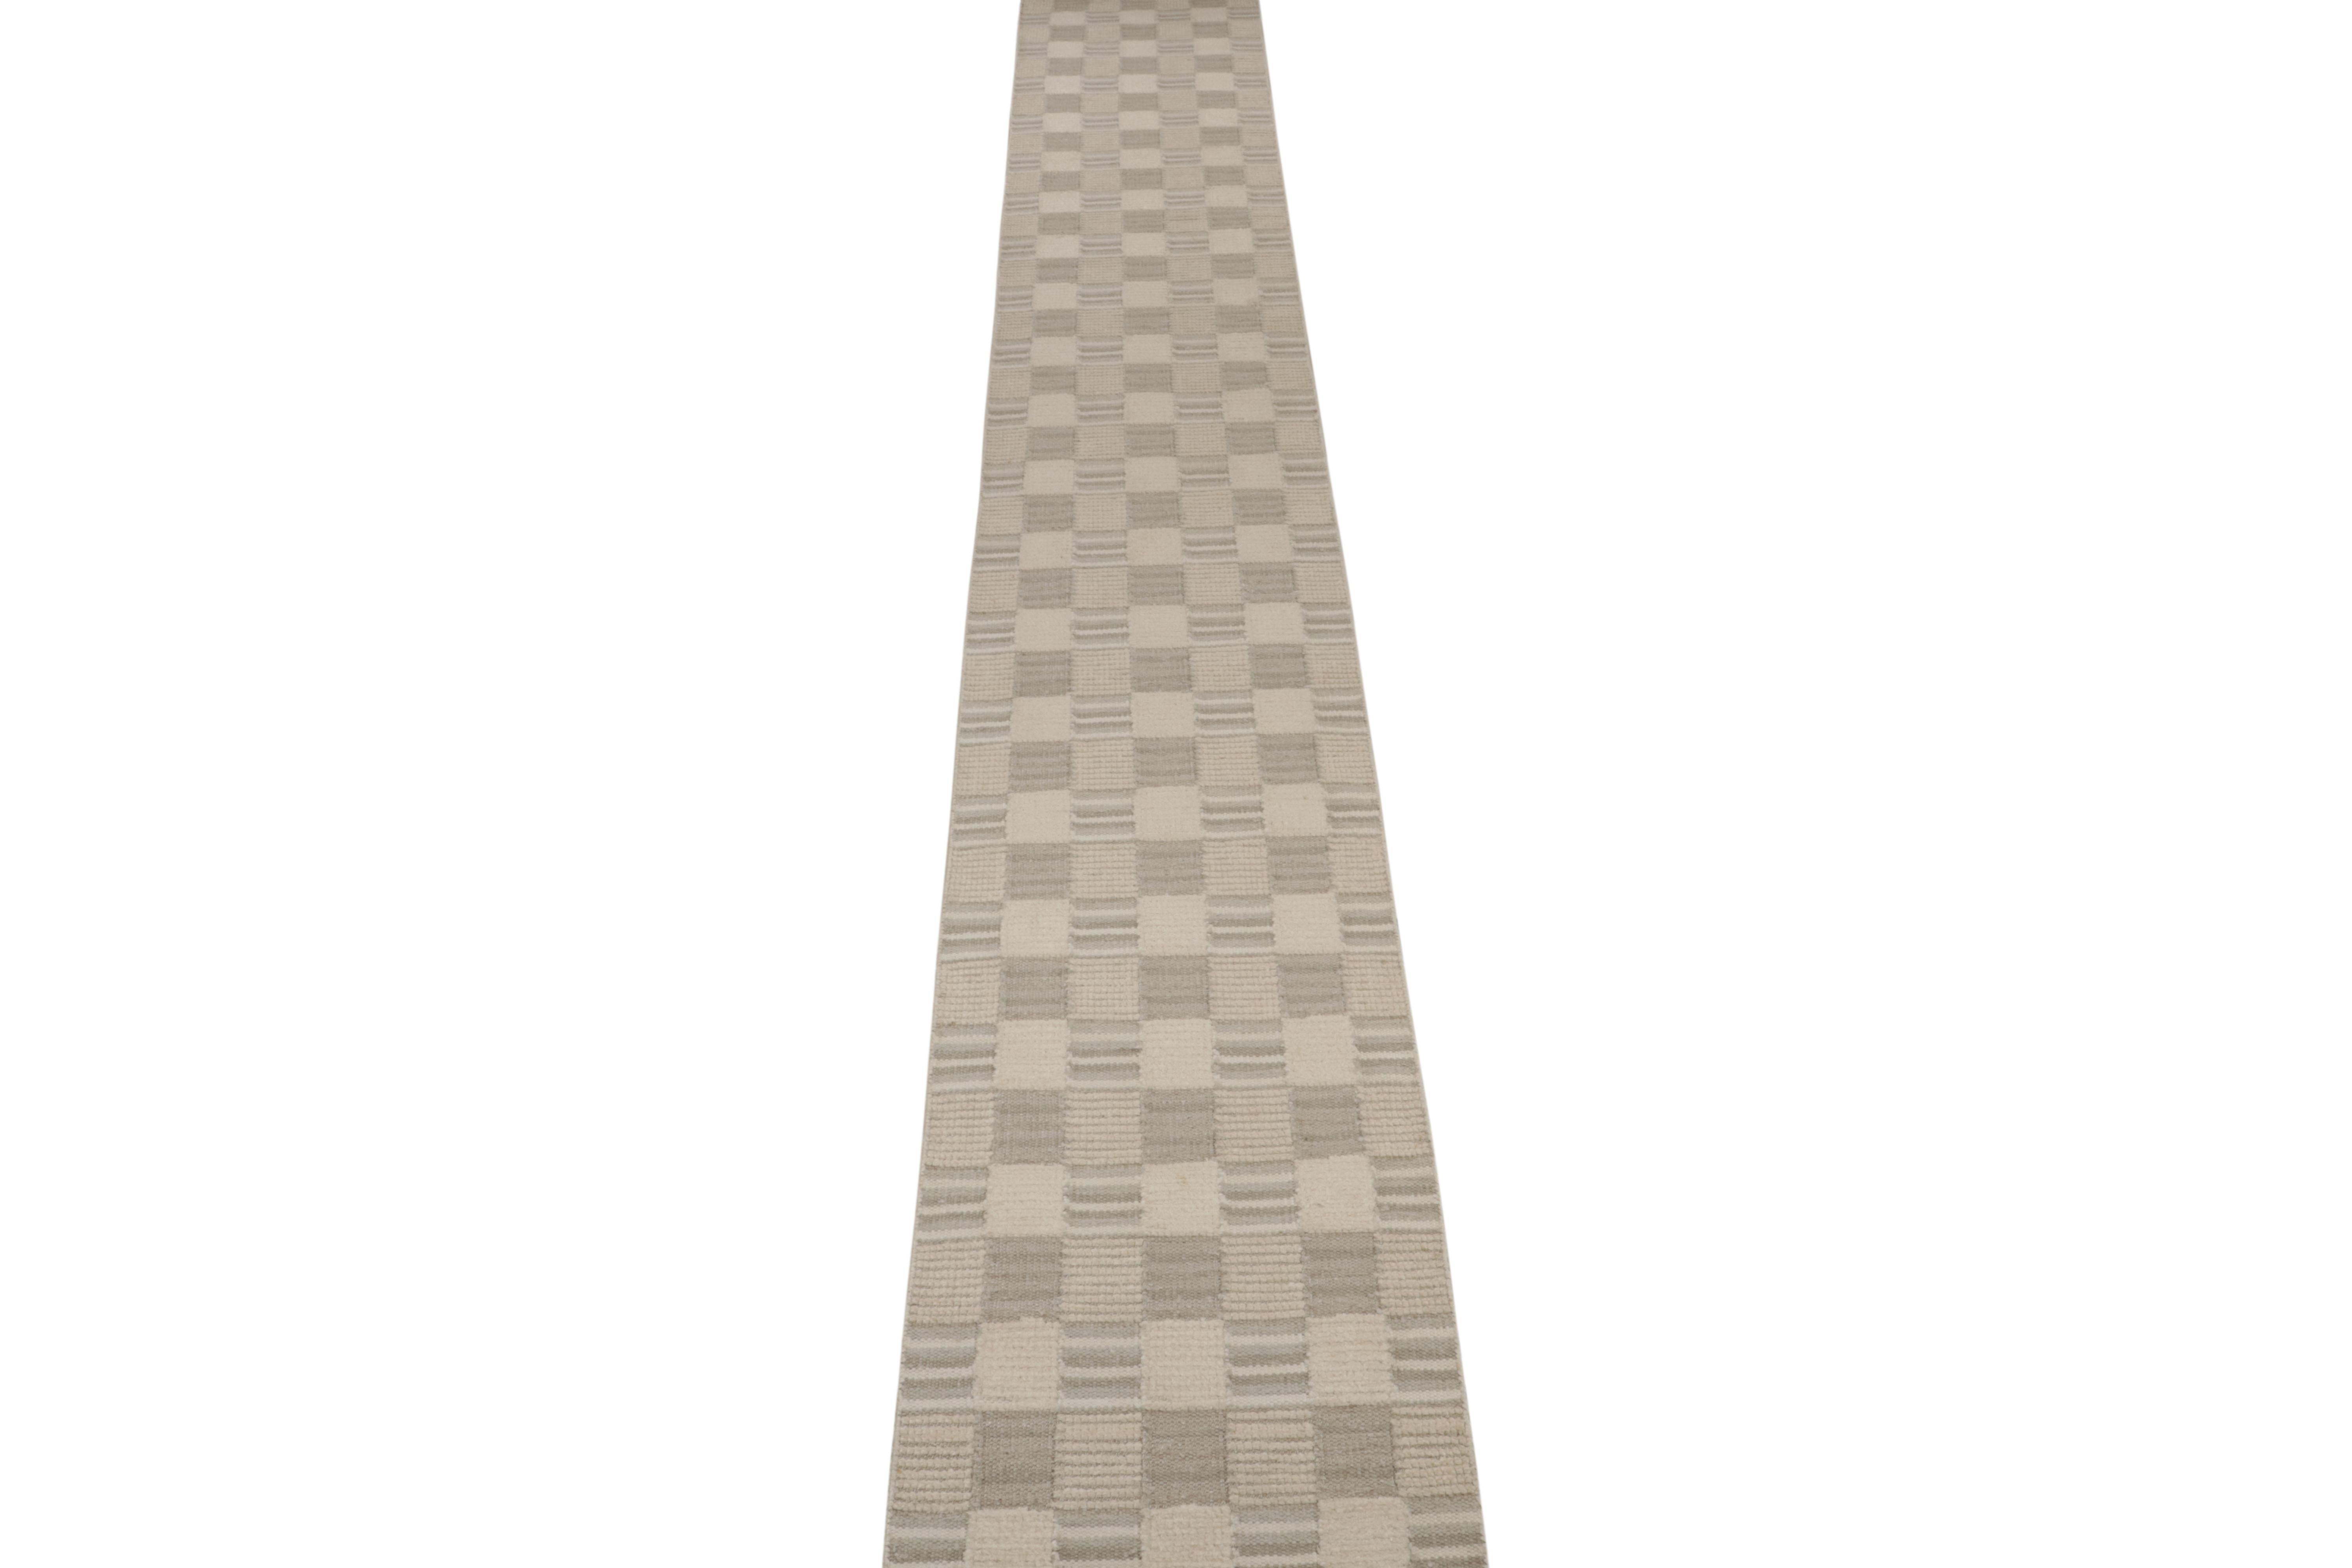 Ein eleganter 2x22 Kelim im schwedischen Stil aus der preisgekrönten skandinavischen Flachgewebekollektion von Rug & Kilim. 

Weiter zum Design: 

Dieser Läufer zeichnet sich durch eine subtile Hoch-Tief-Struktur in Verbindung mit geometrischen